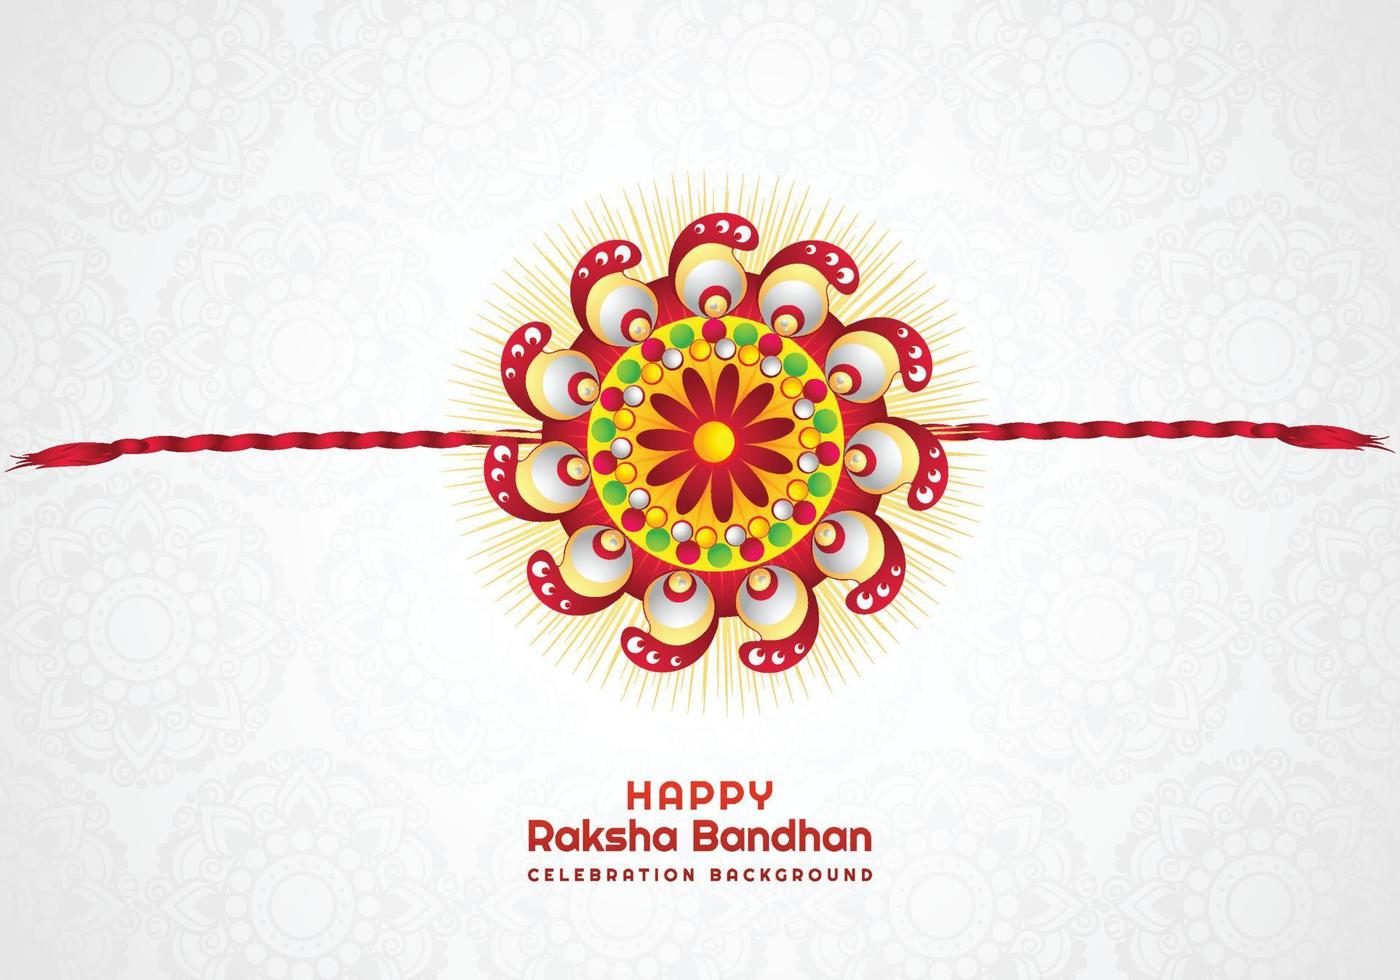 sfondo della carta di raksha bandhan del festival indù vettore